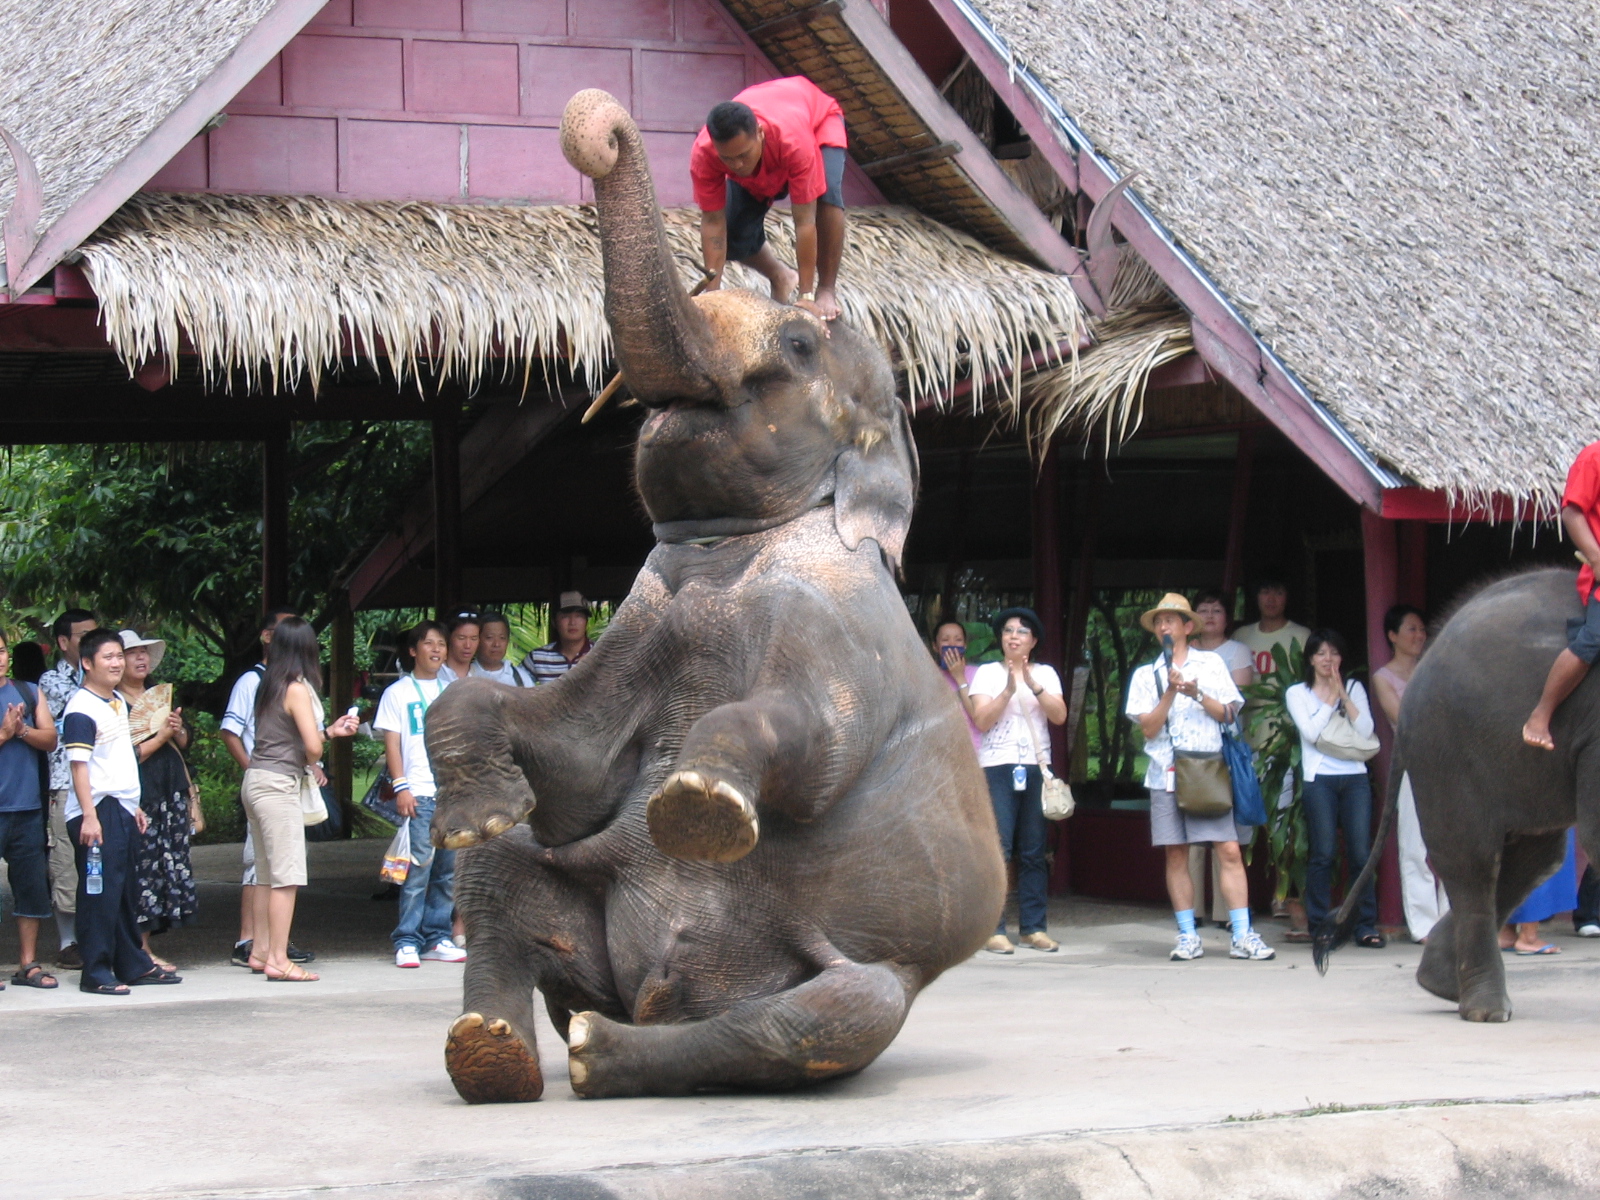 ダンシング・エレファント<br>Dancing Elephant